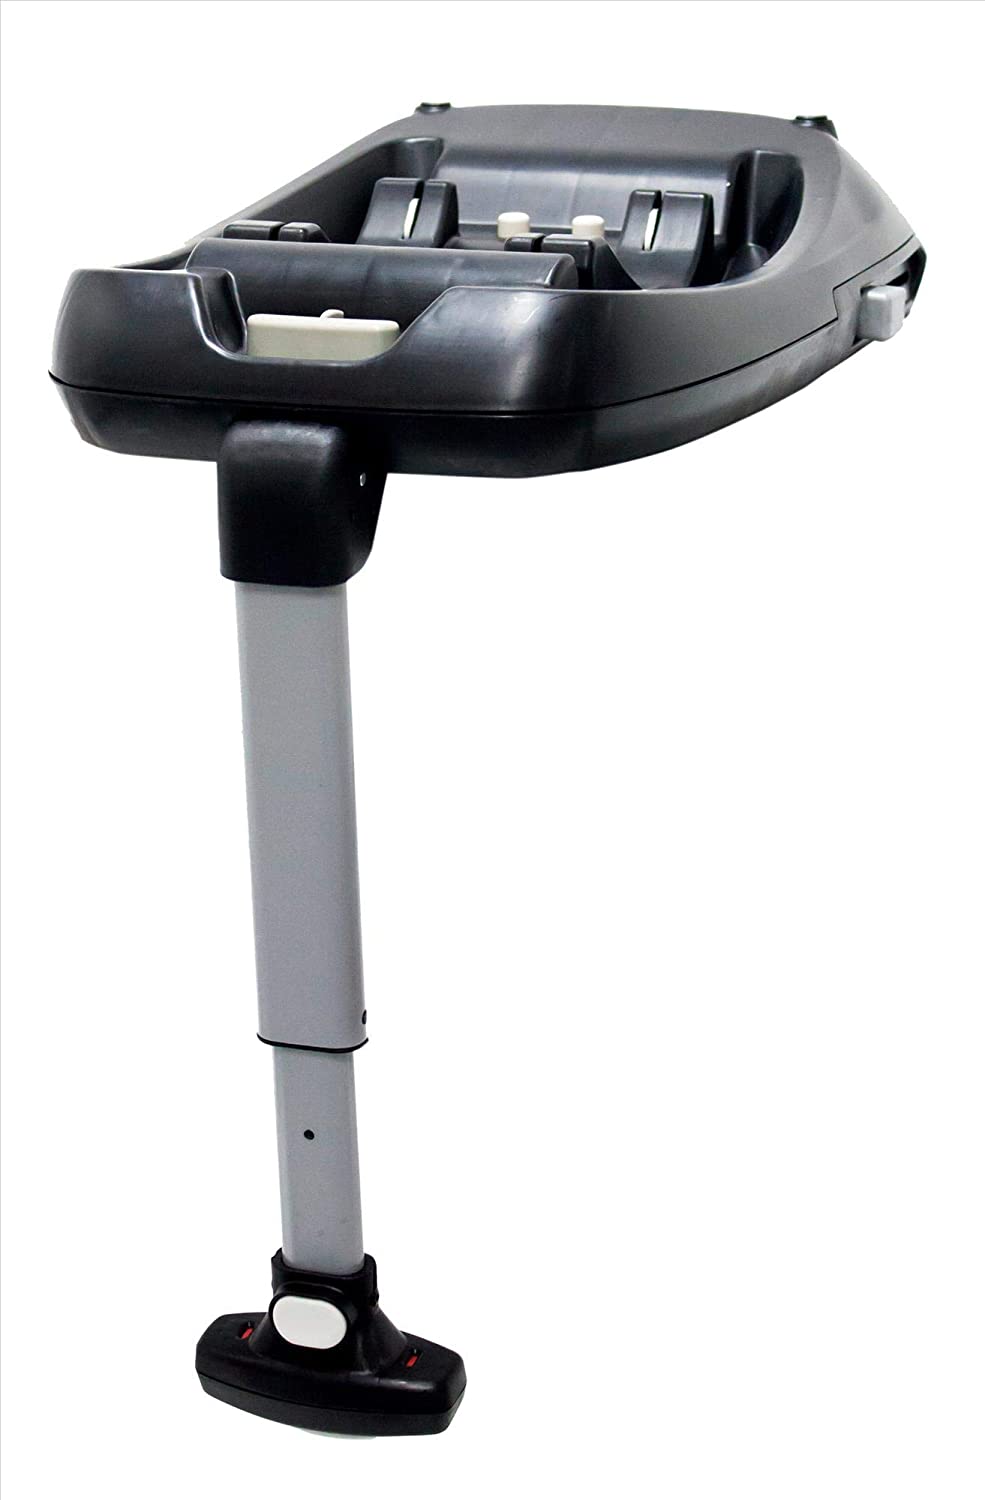 Cosatto Hold Isofix Car Seat Base 2014 Range – Black